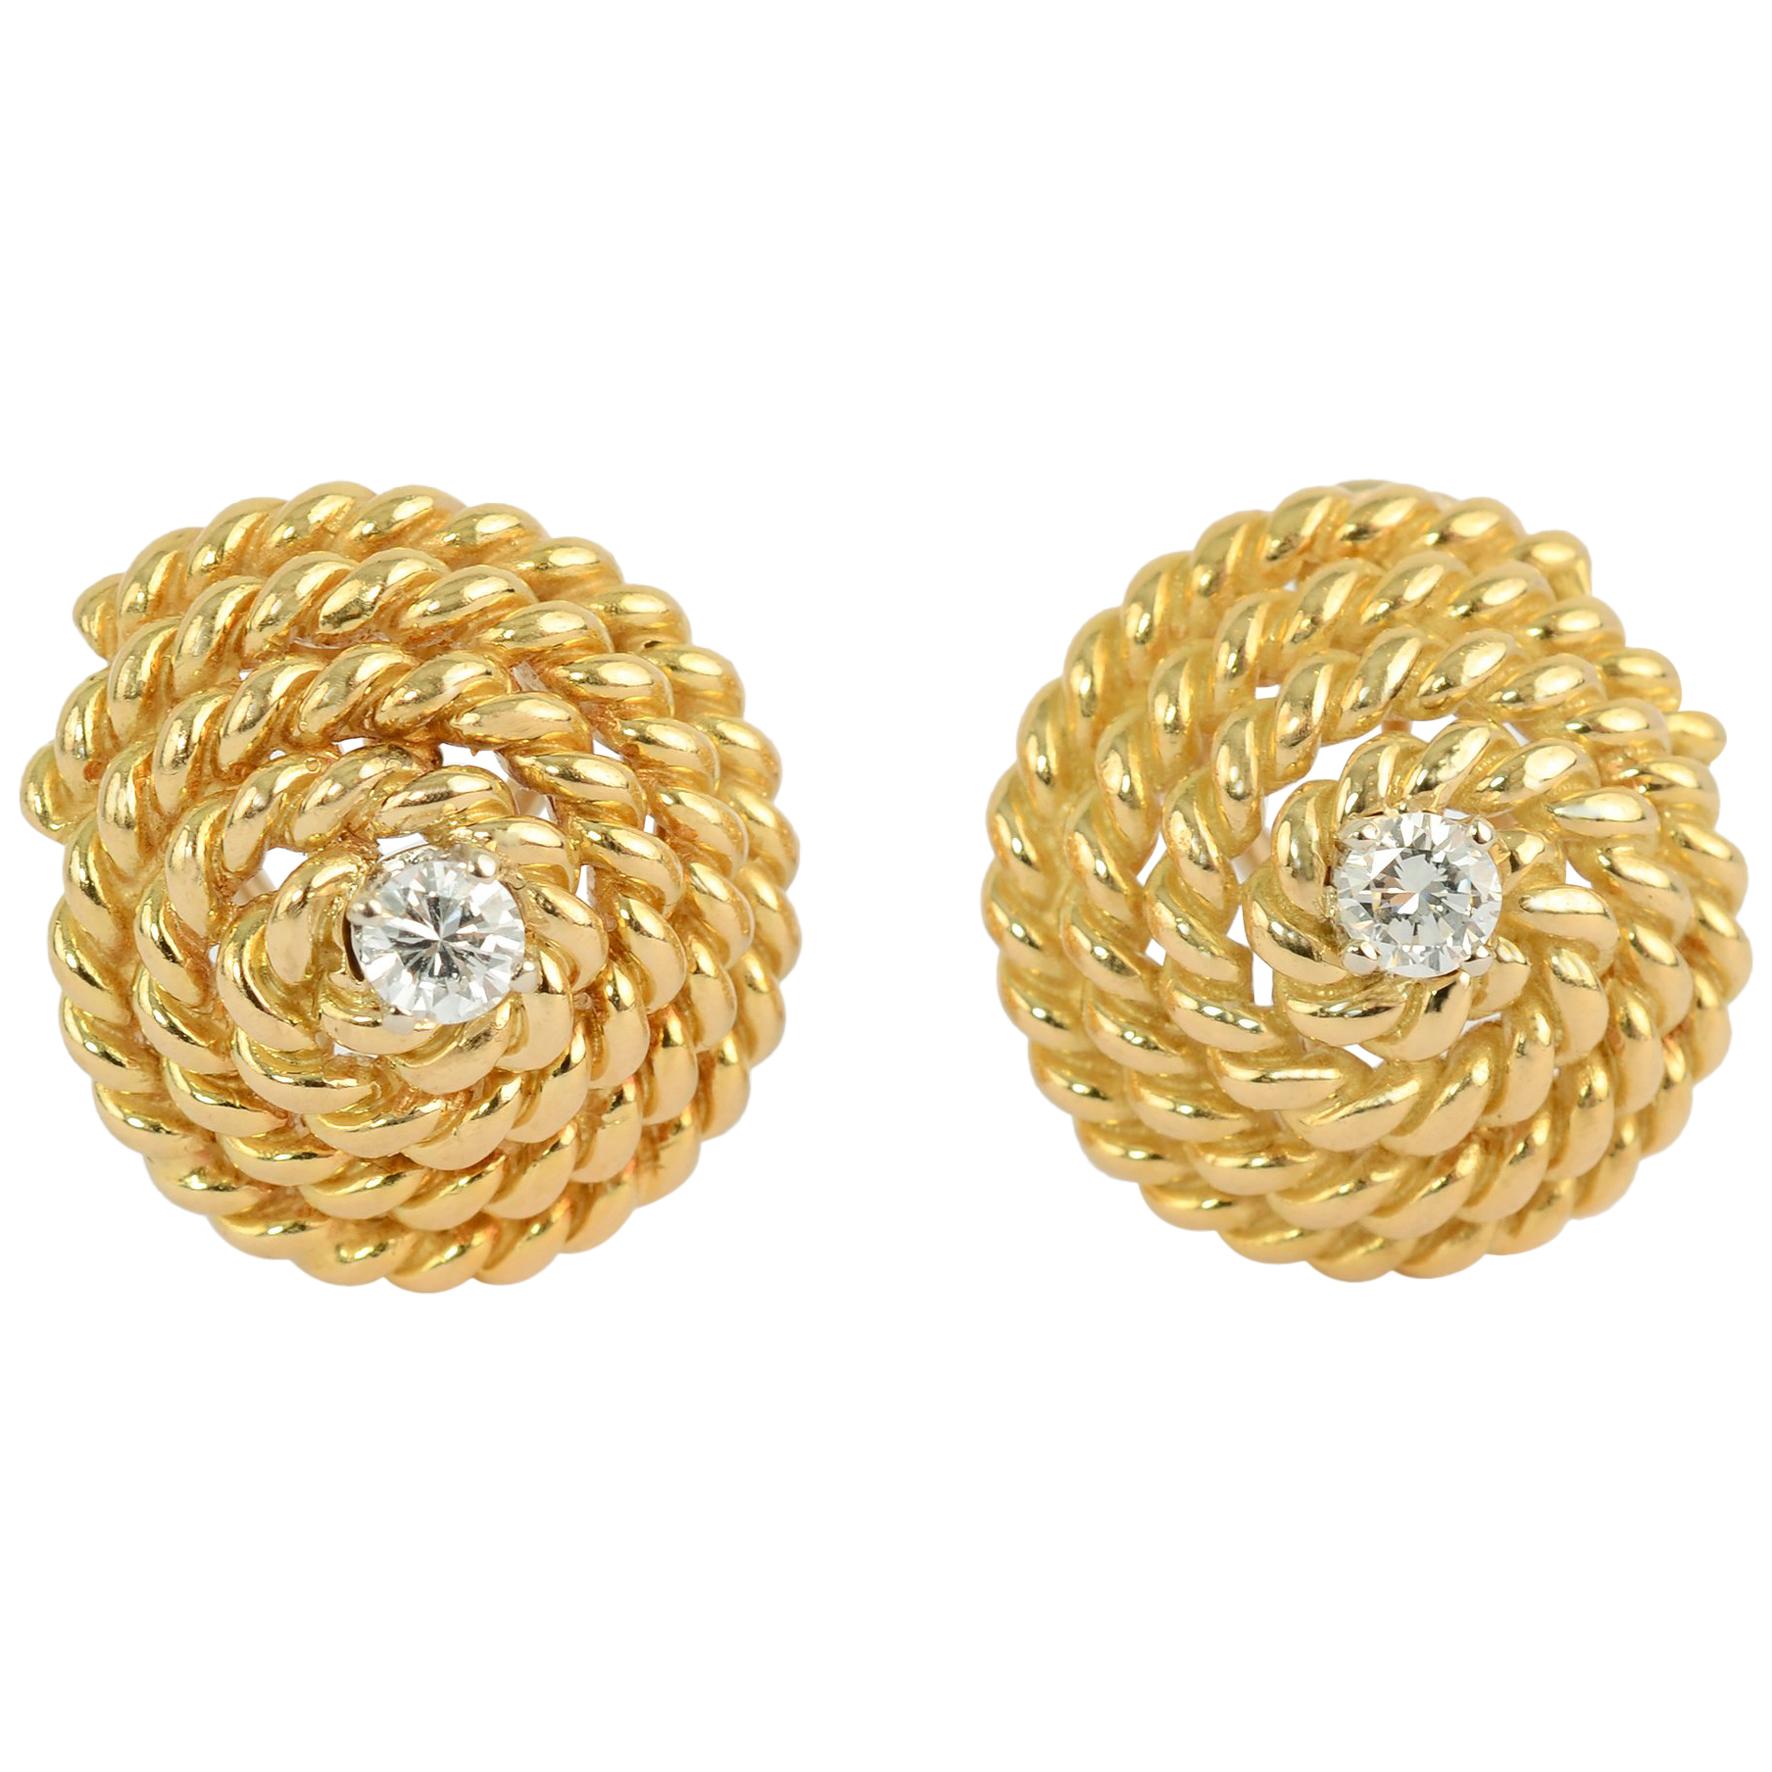 Goldkugel-Ohrringe von Tiffany mit Diamanten in der Mitte